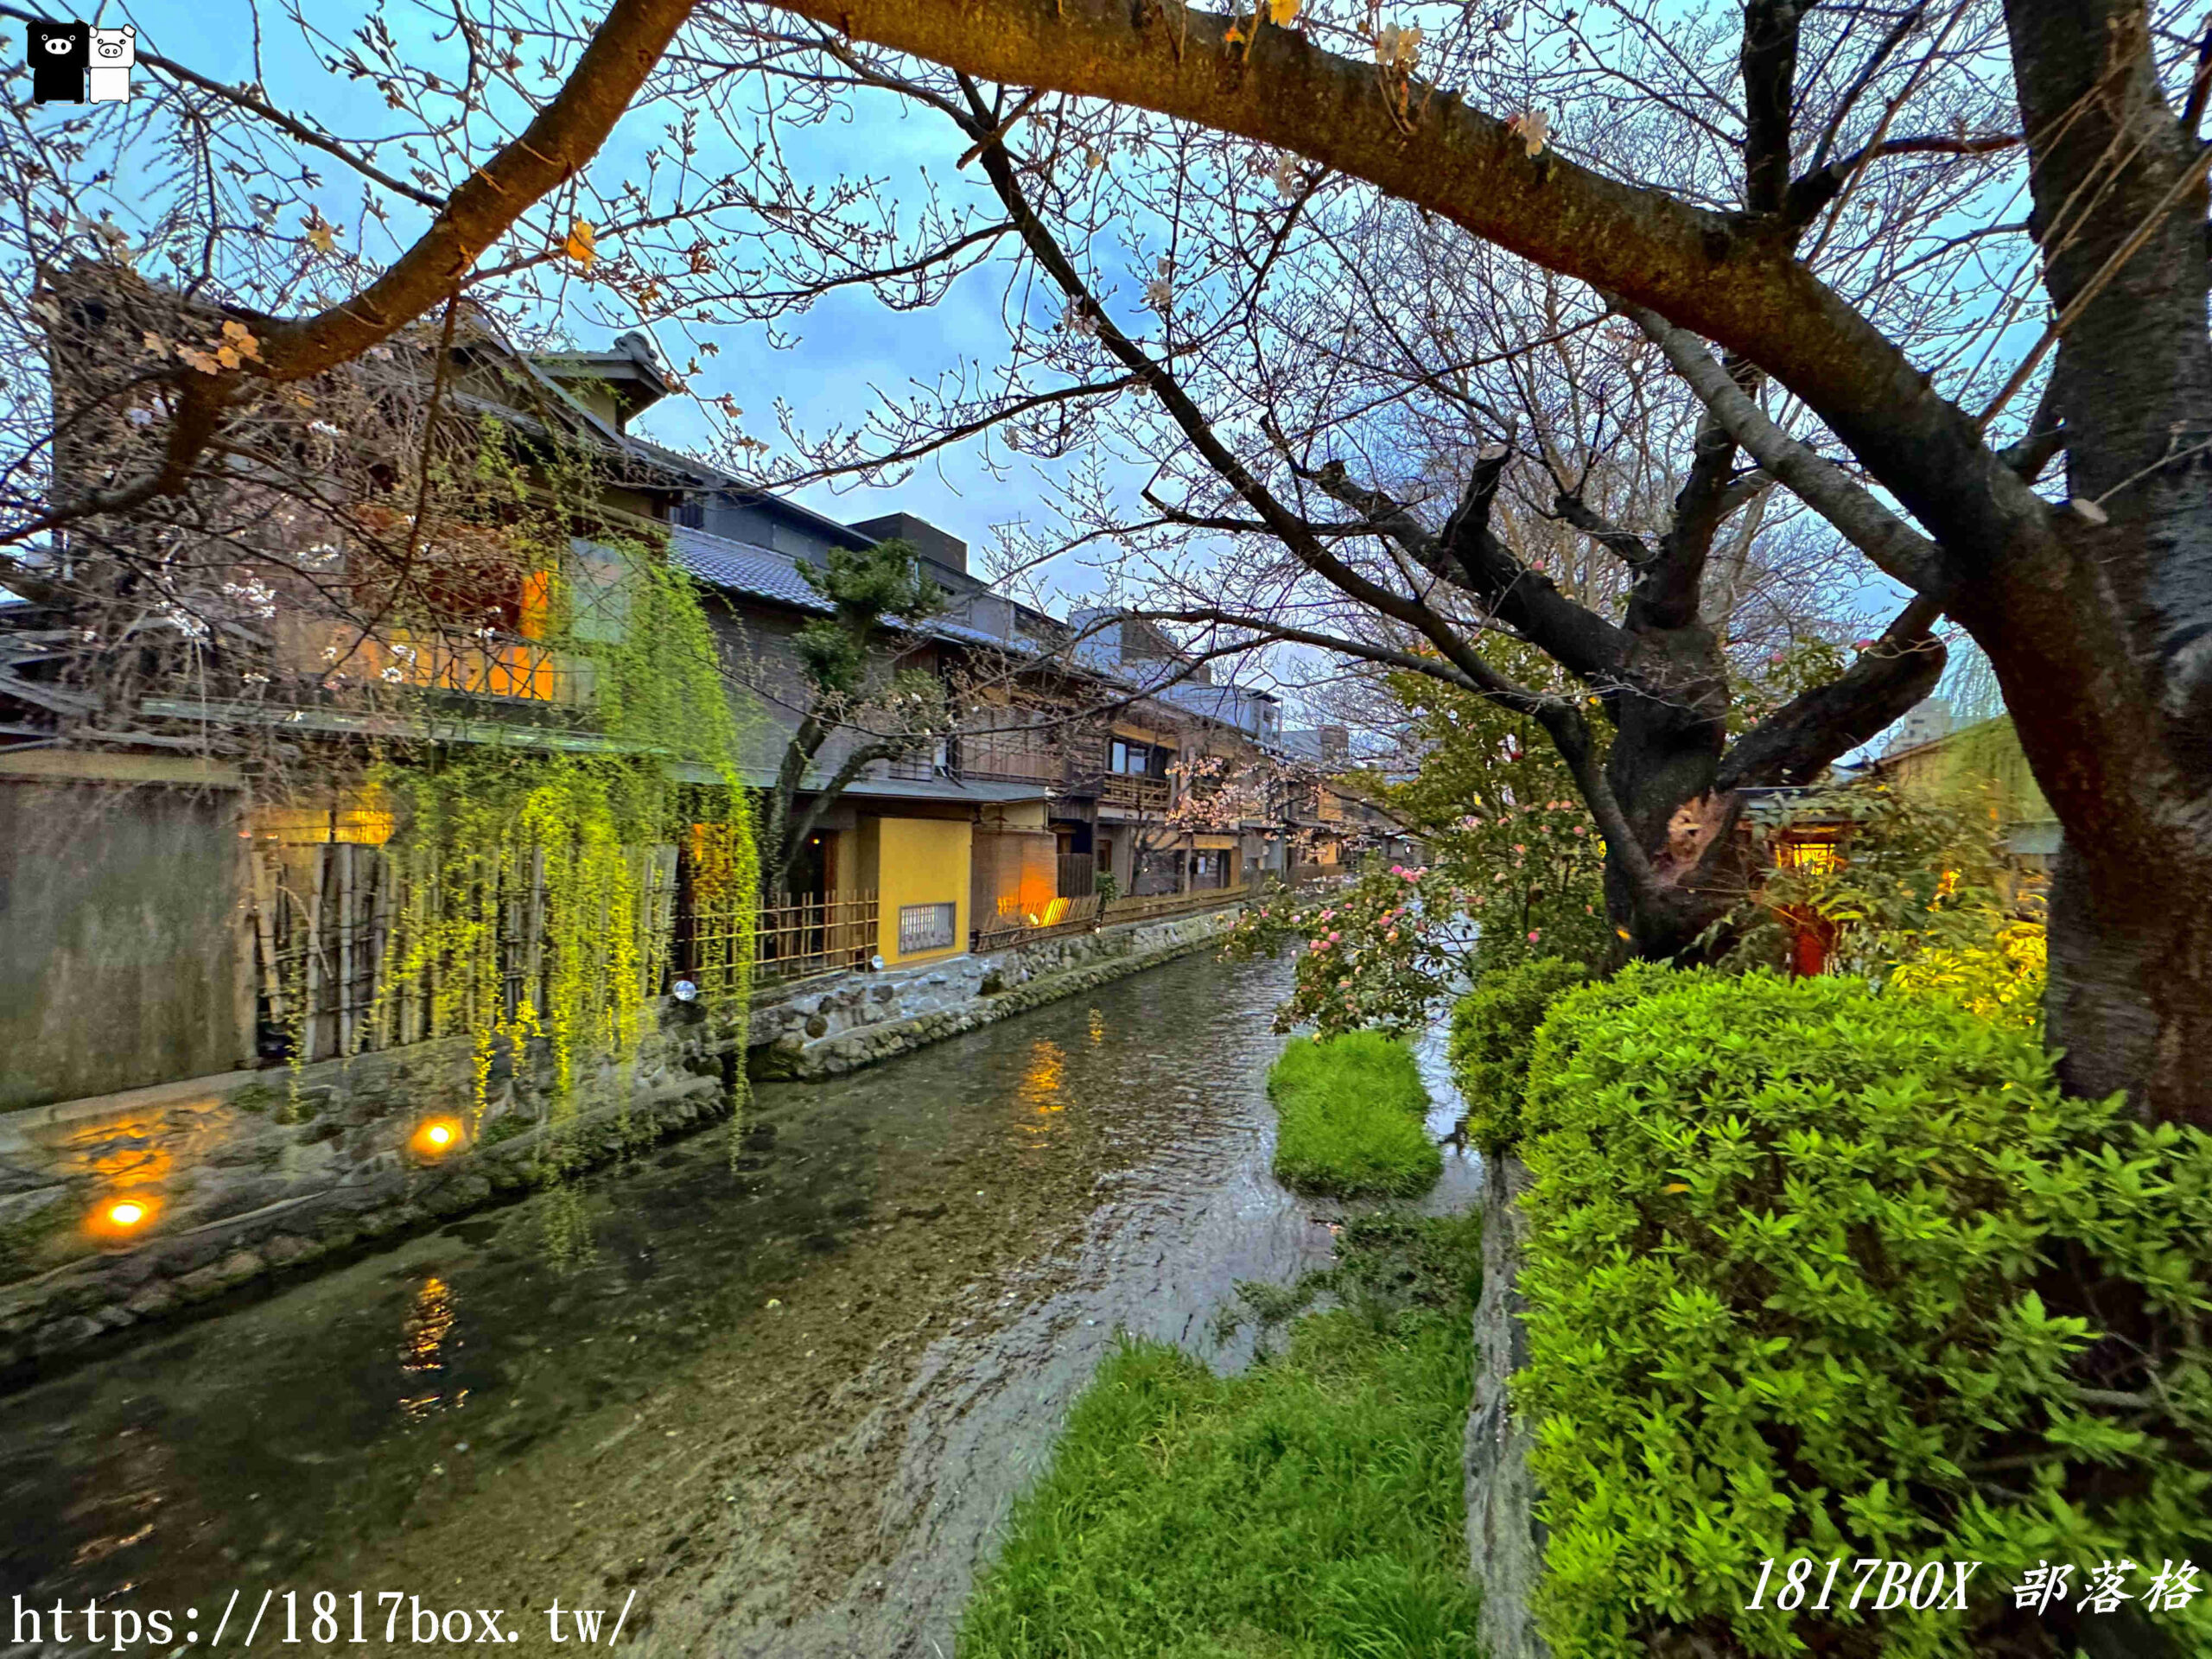 【京都景點】祇園白川筋。小橋流水。古色古香的町家建築 @1817BOX部落格